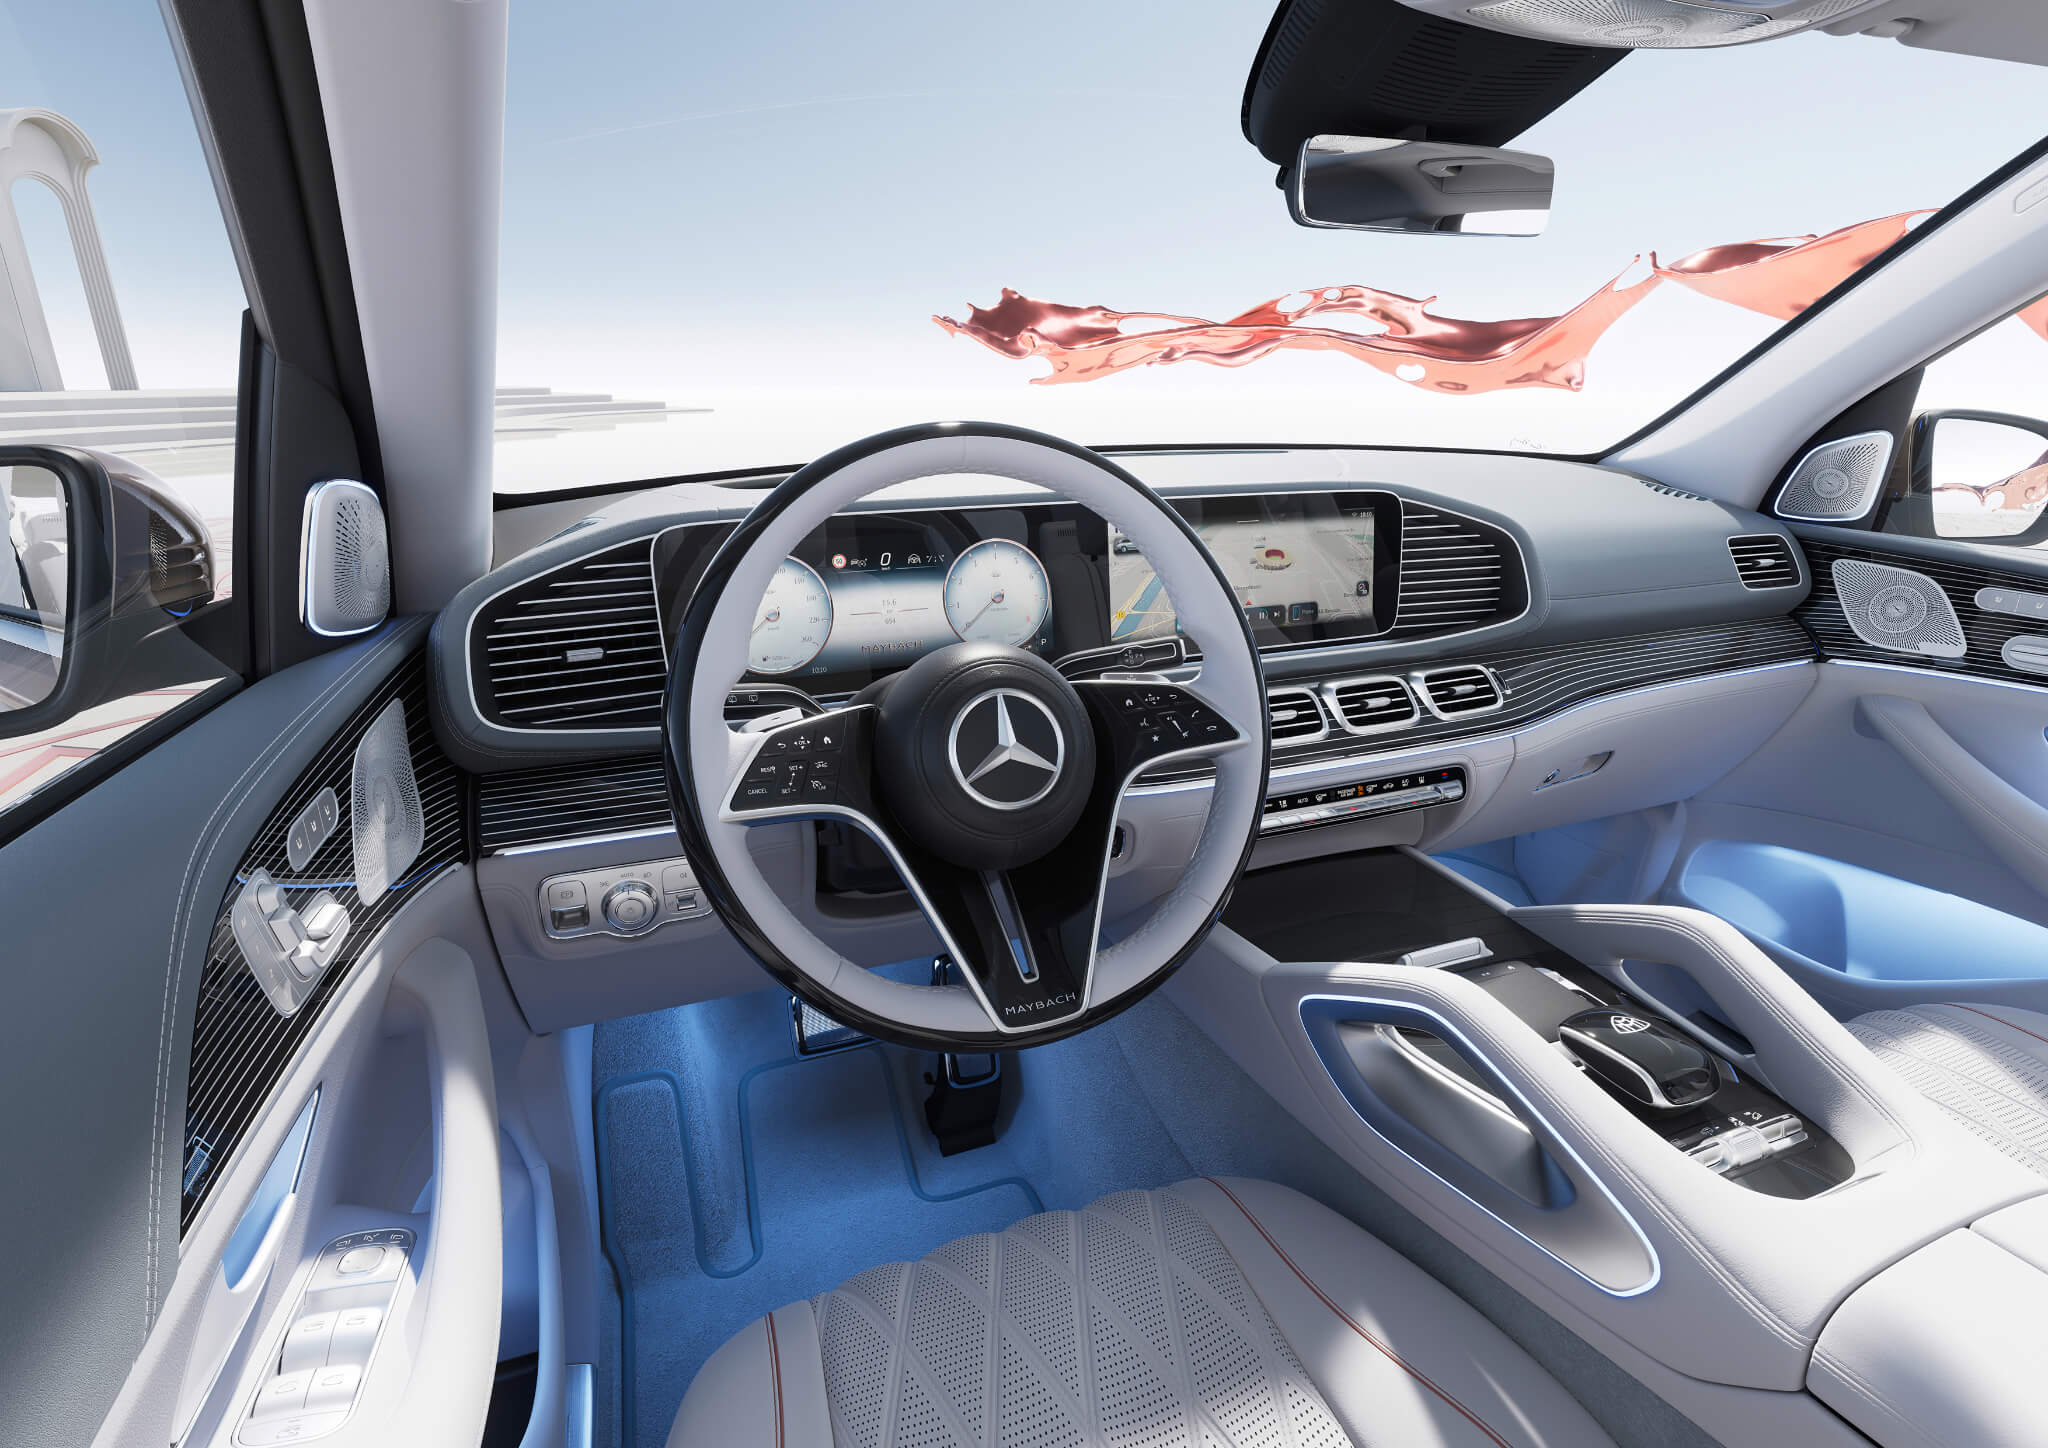 Mercedes-Maybach GLS interior